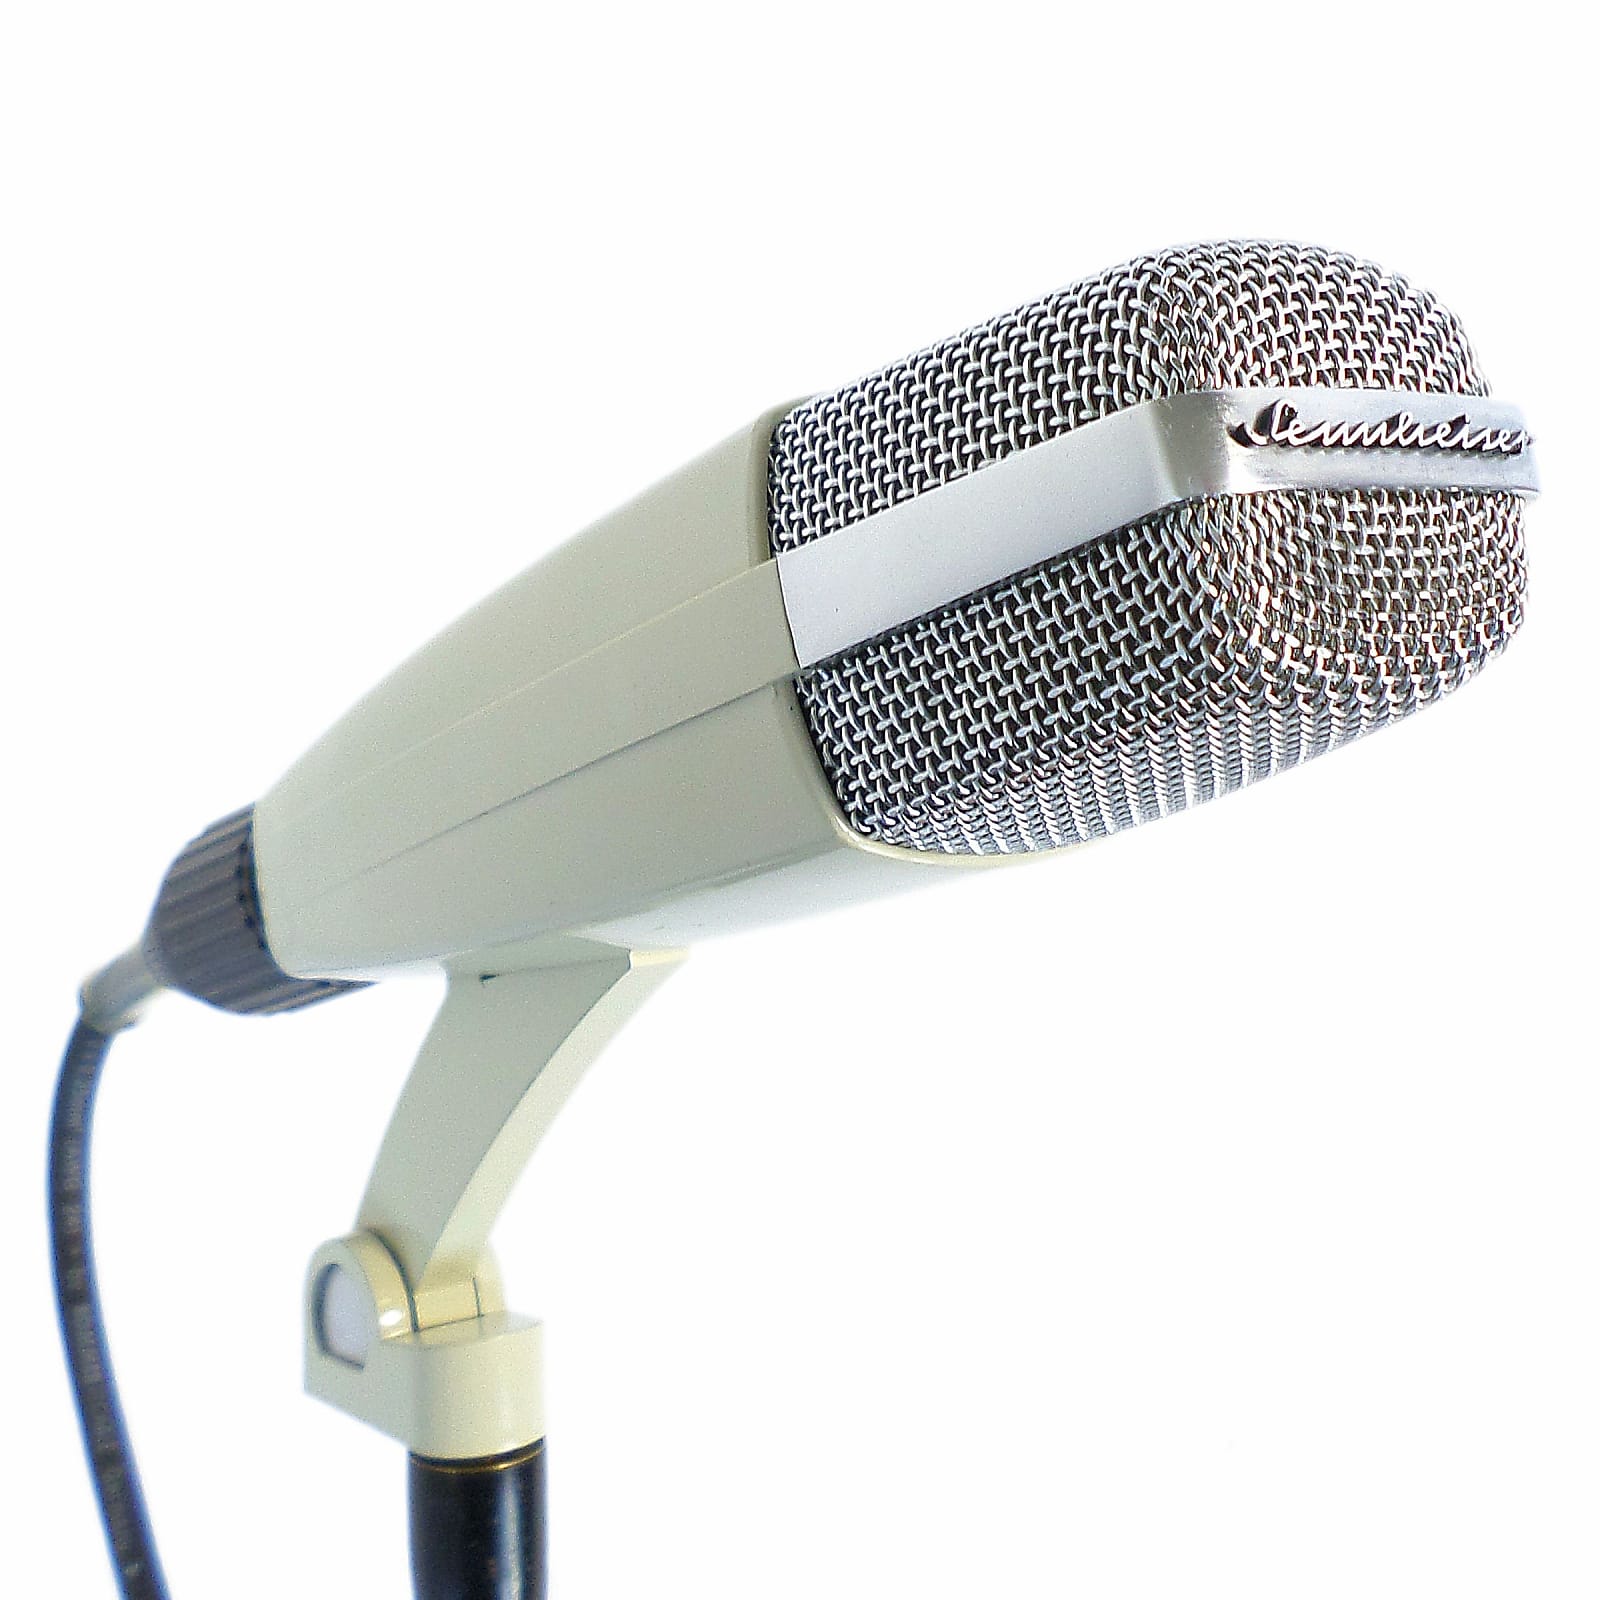 Sennheiser MD 421-2 Cardioid Dynamic Microphone | Reverb